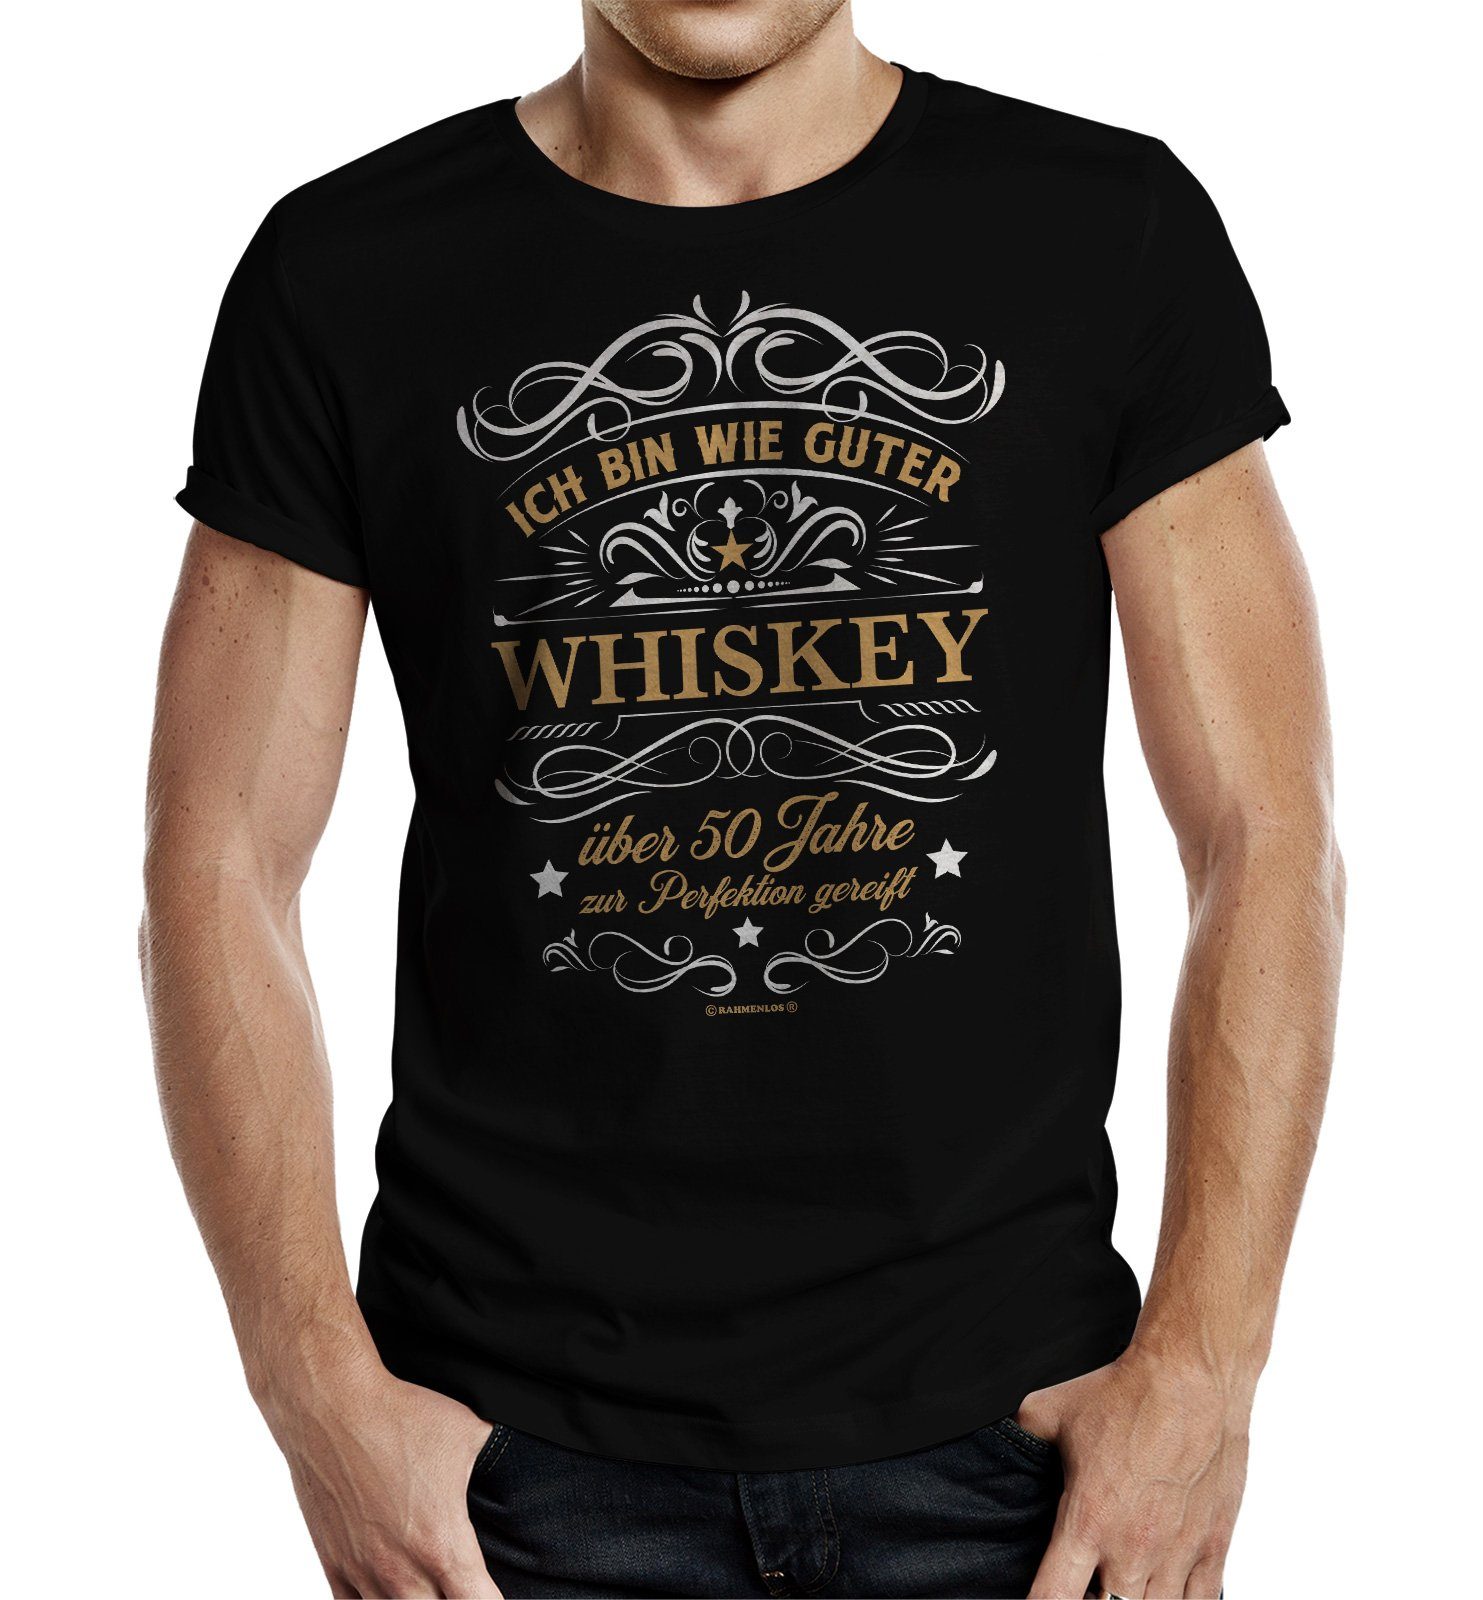 Rahmenlos T-Shirt Geschenk zum 50. Geburtstag - wie guter Whiskey 50 Jahre gereift